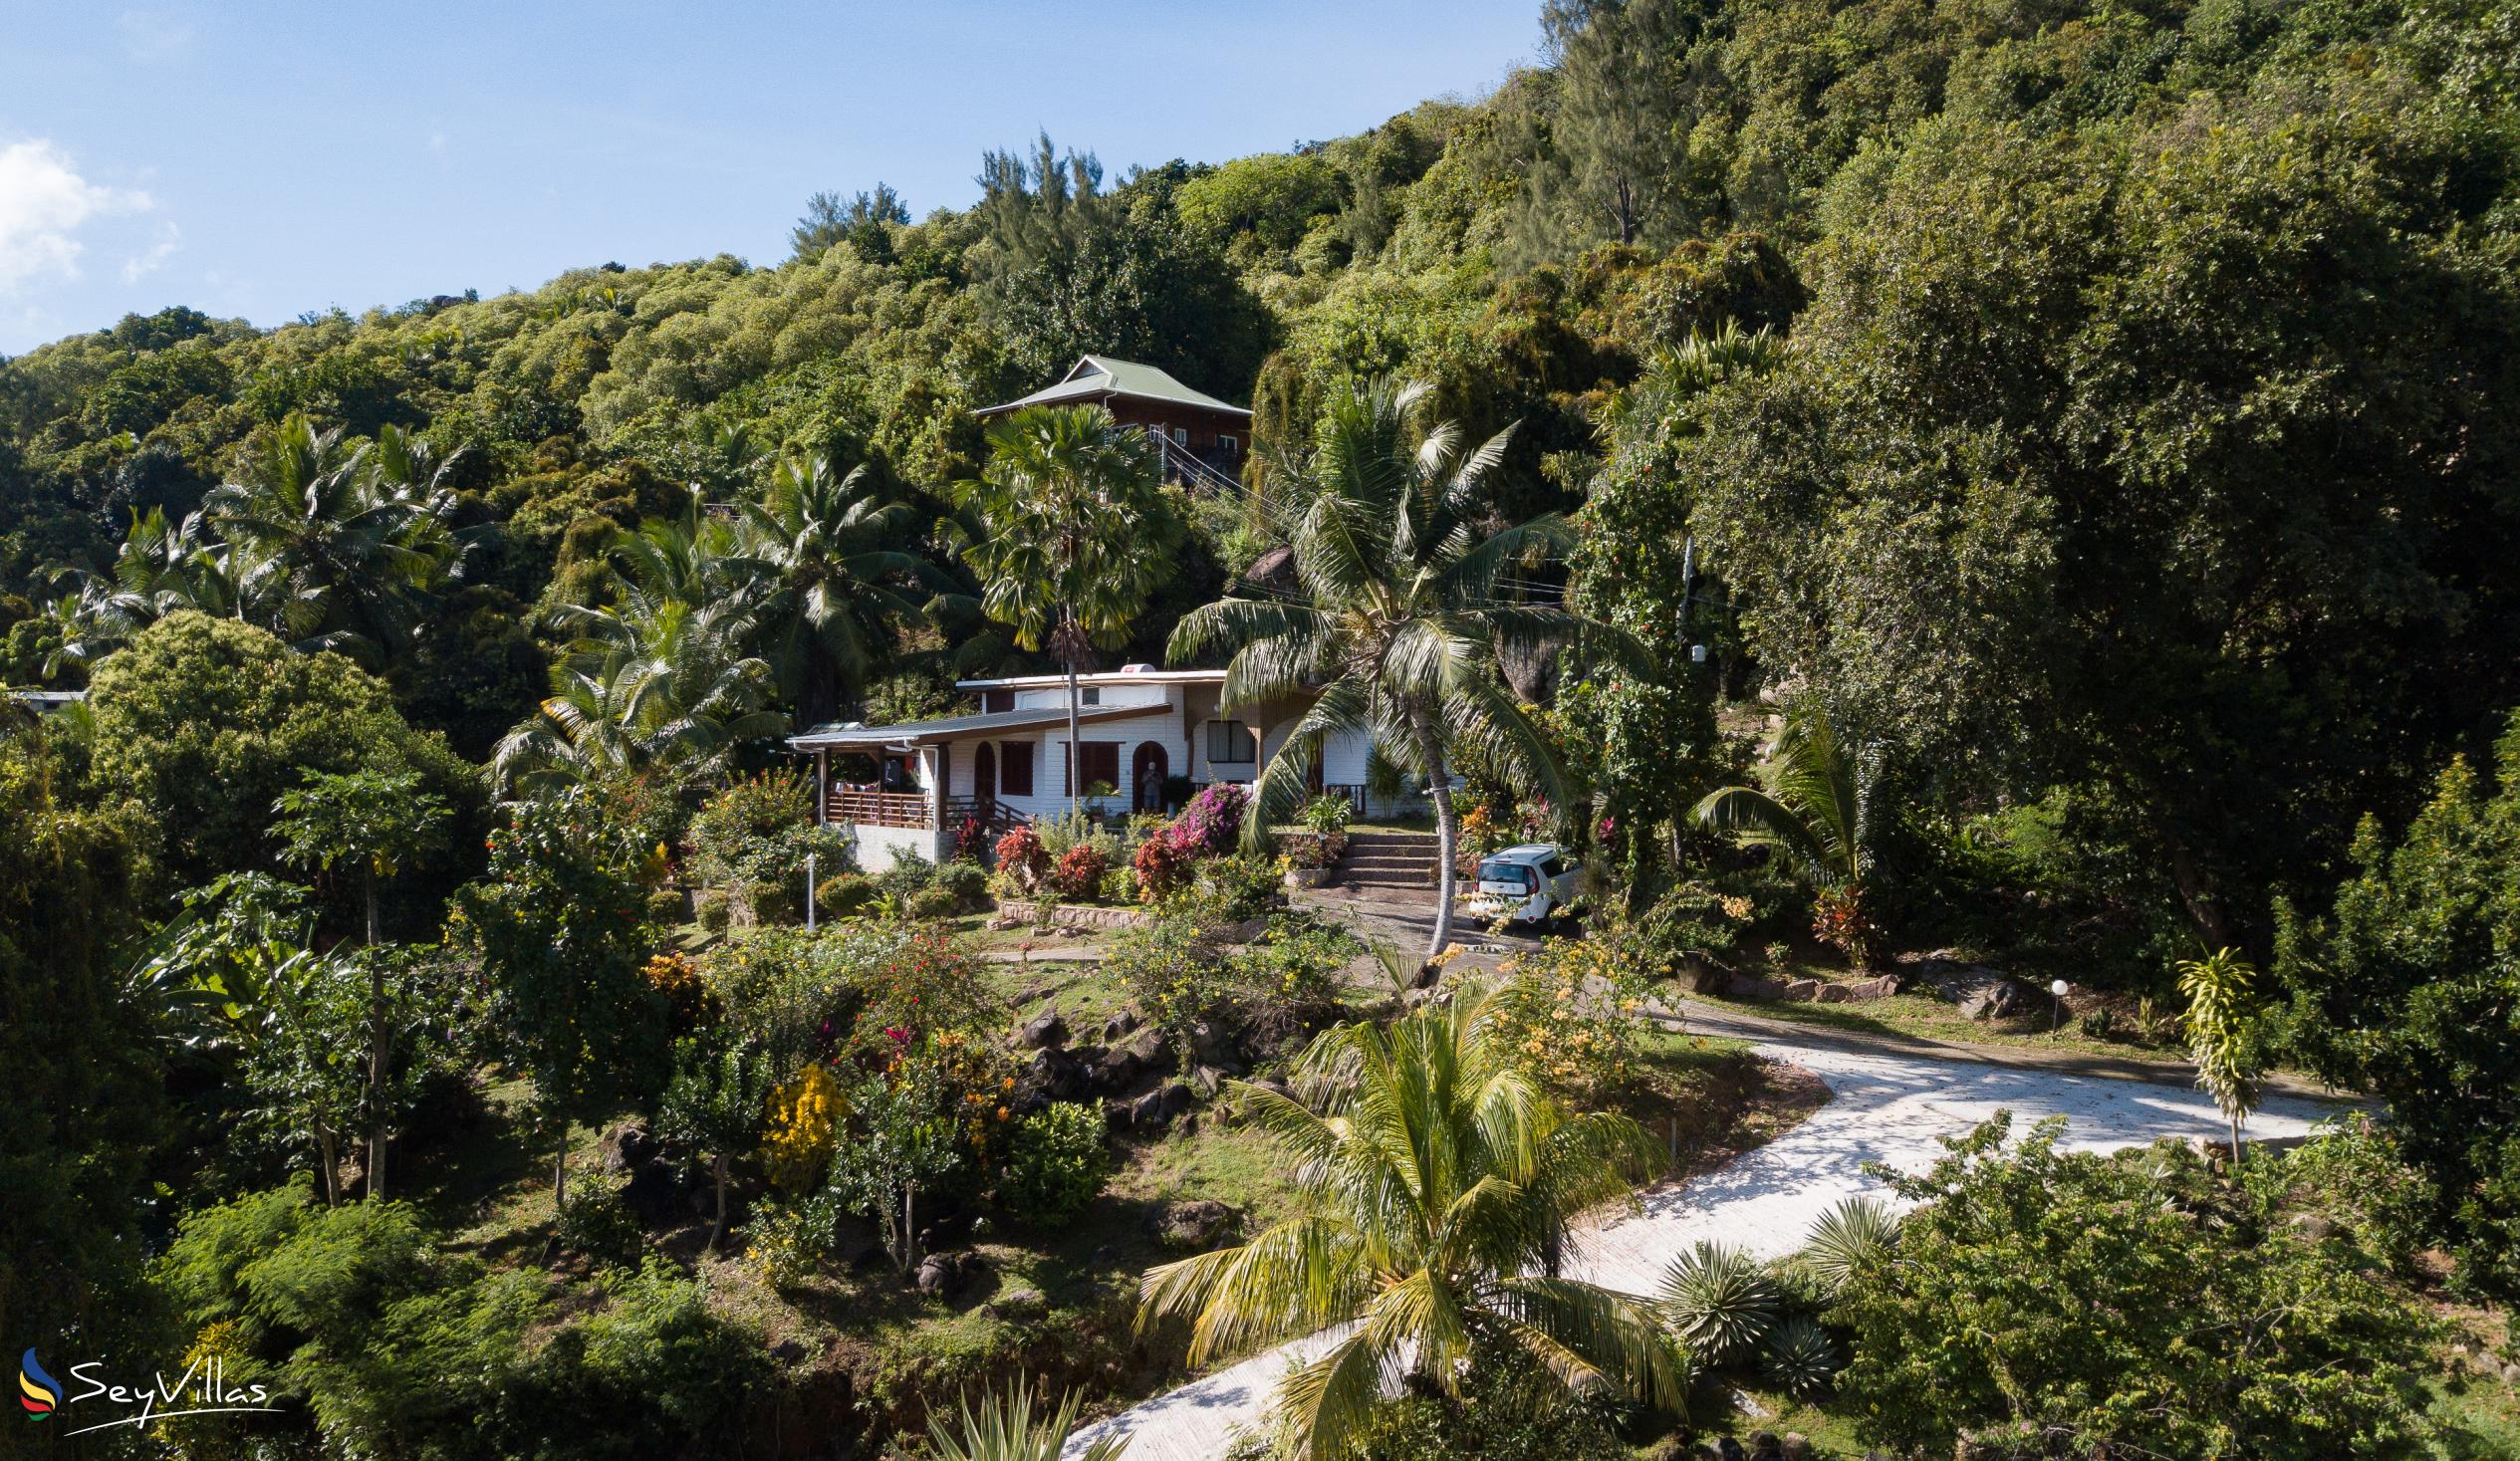 Photo 3: Le Grand Bleu Villas - Outdoor area - Praslin (Seychelles)